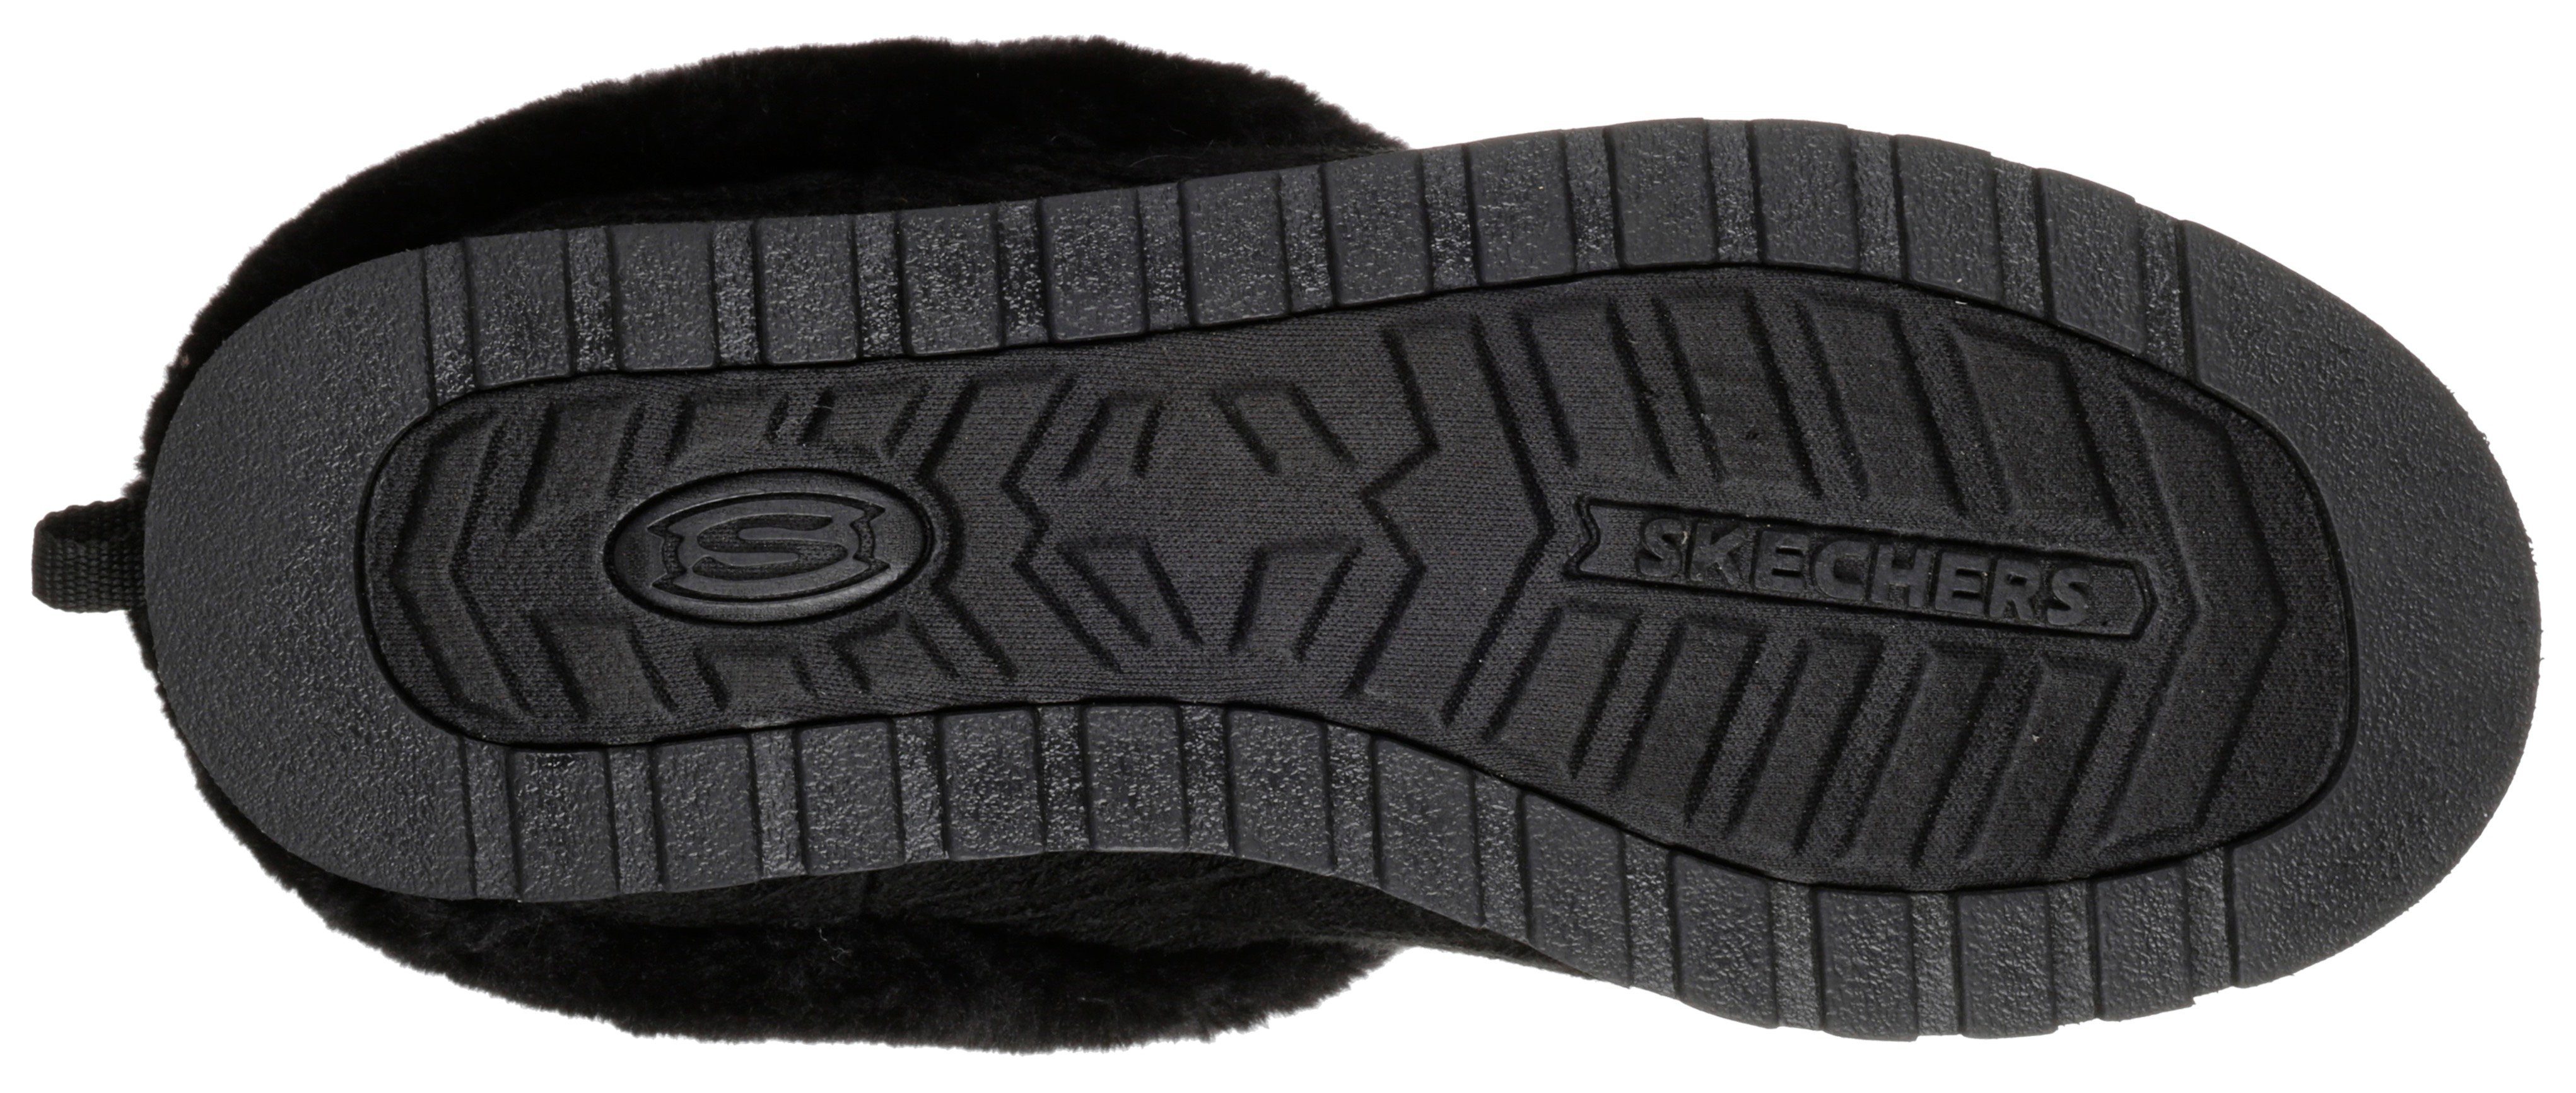 KEEPSAKES schwarz Pantoffel Skechers in Strick-Optik ICE ANGEL -